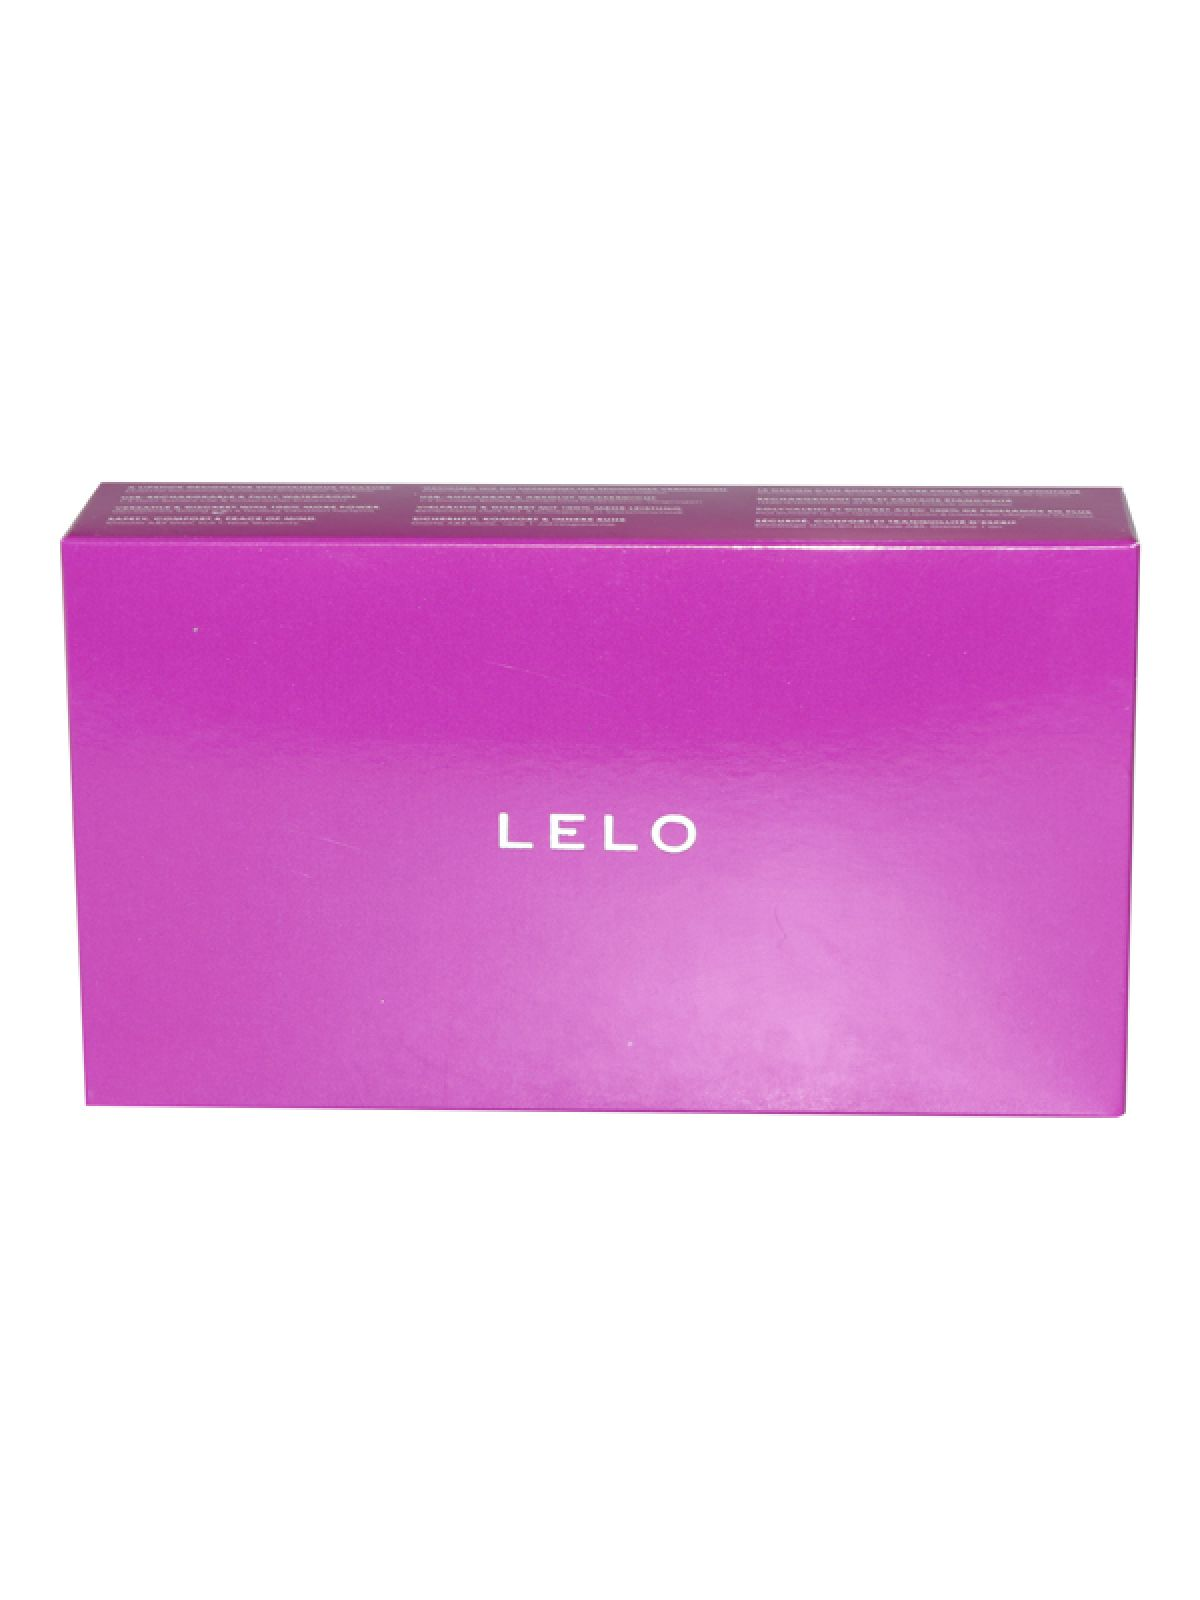 LELO LELO - Mia 2 - Bullet Cerise Vibrator mini-vibrators